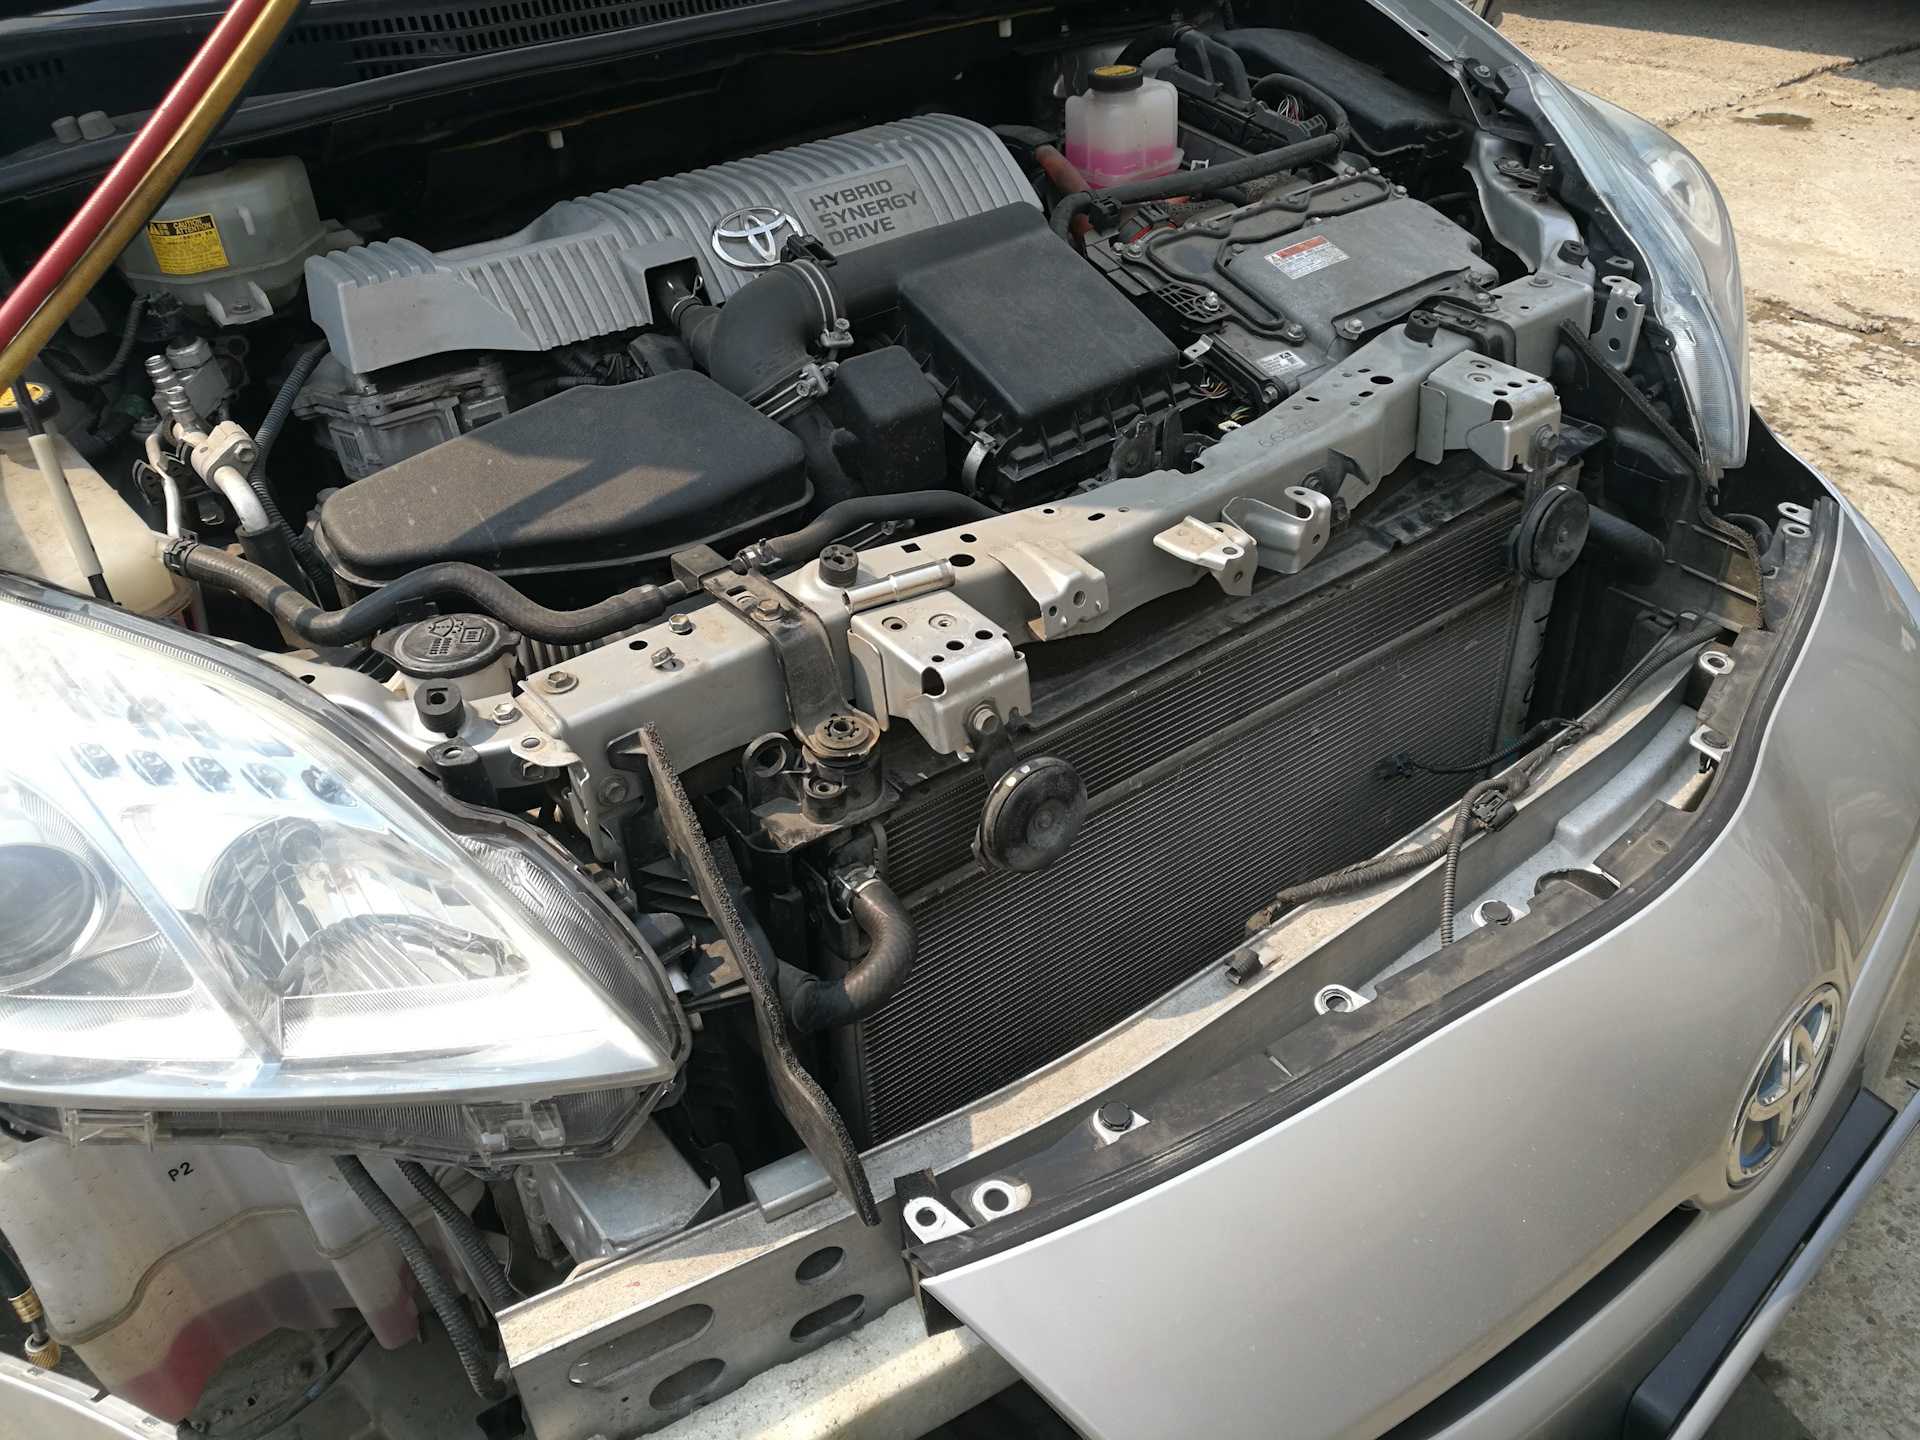 Toyota avensis - замена радиатора охлаждения своими руками